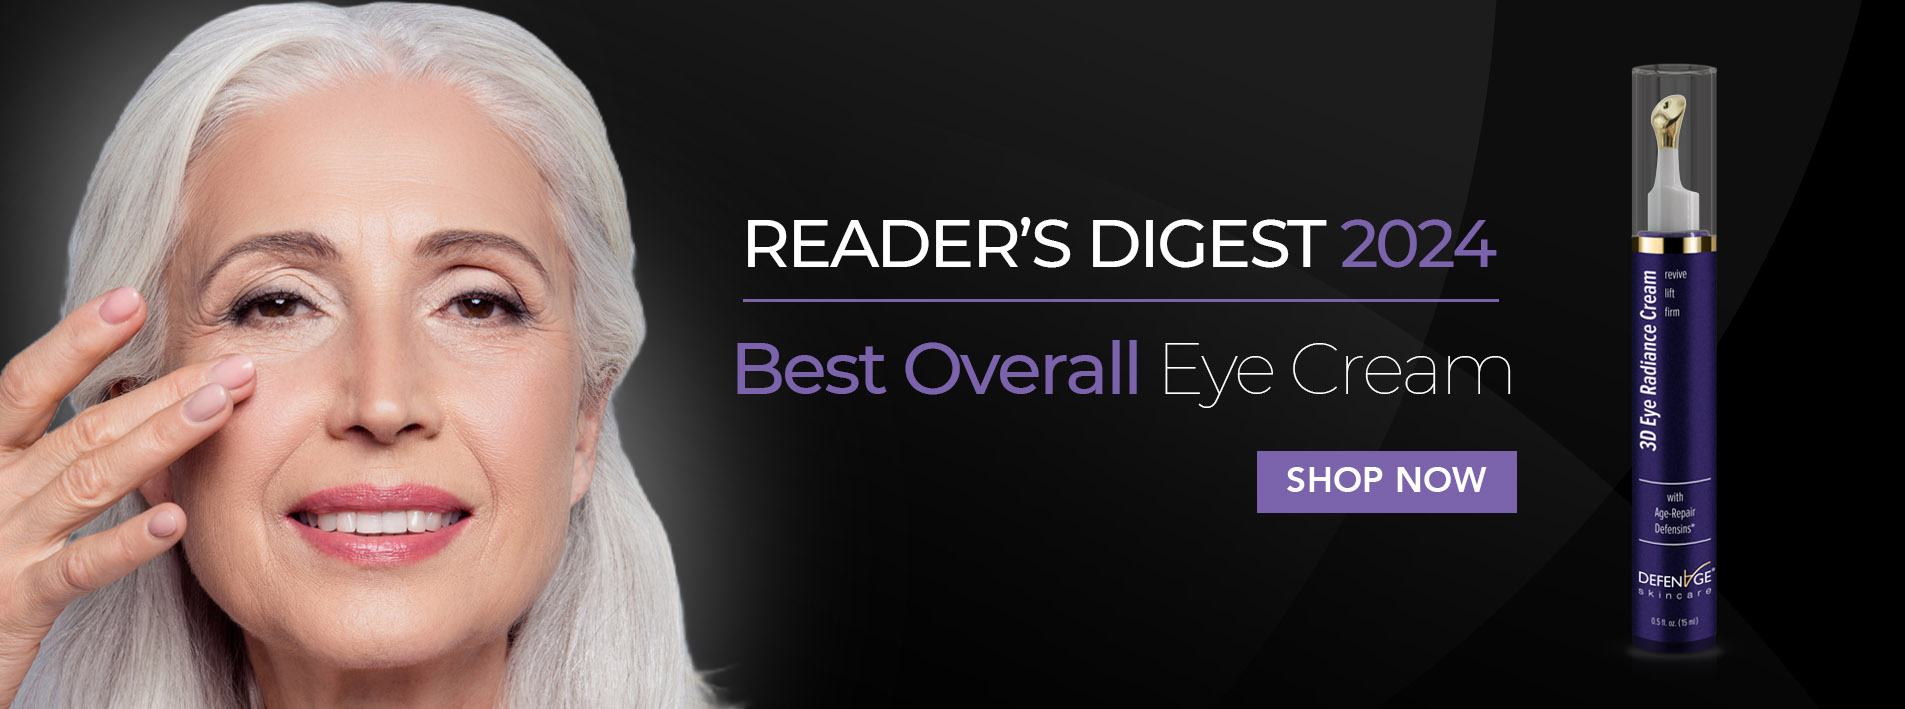 Reader's Digest: Best Overall Eye Cream - 3D Eye Radiance 